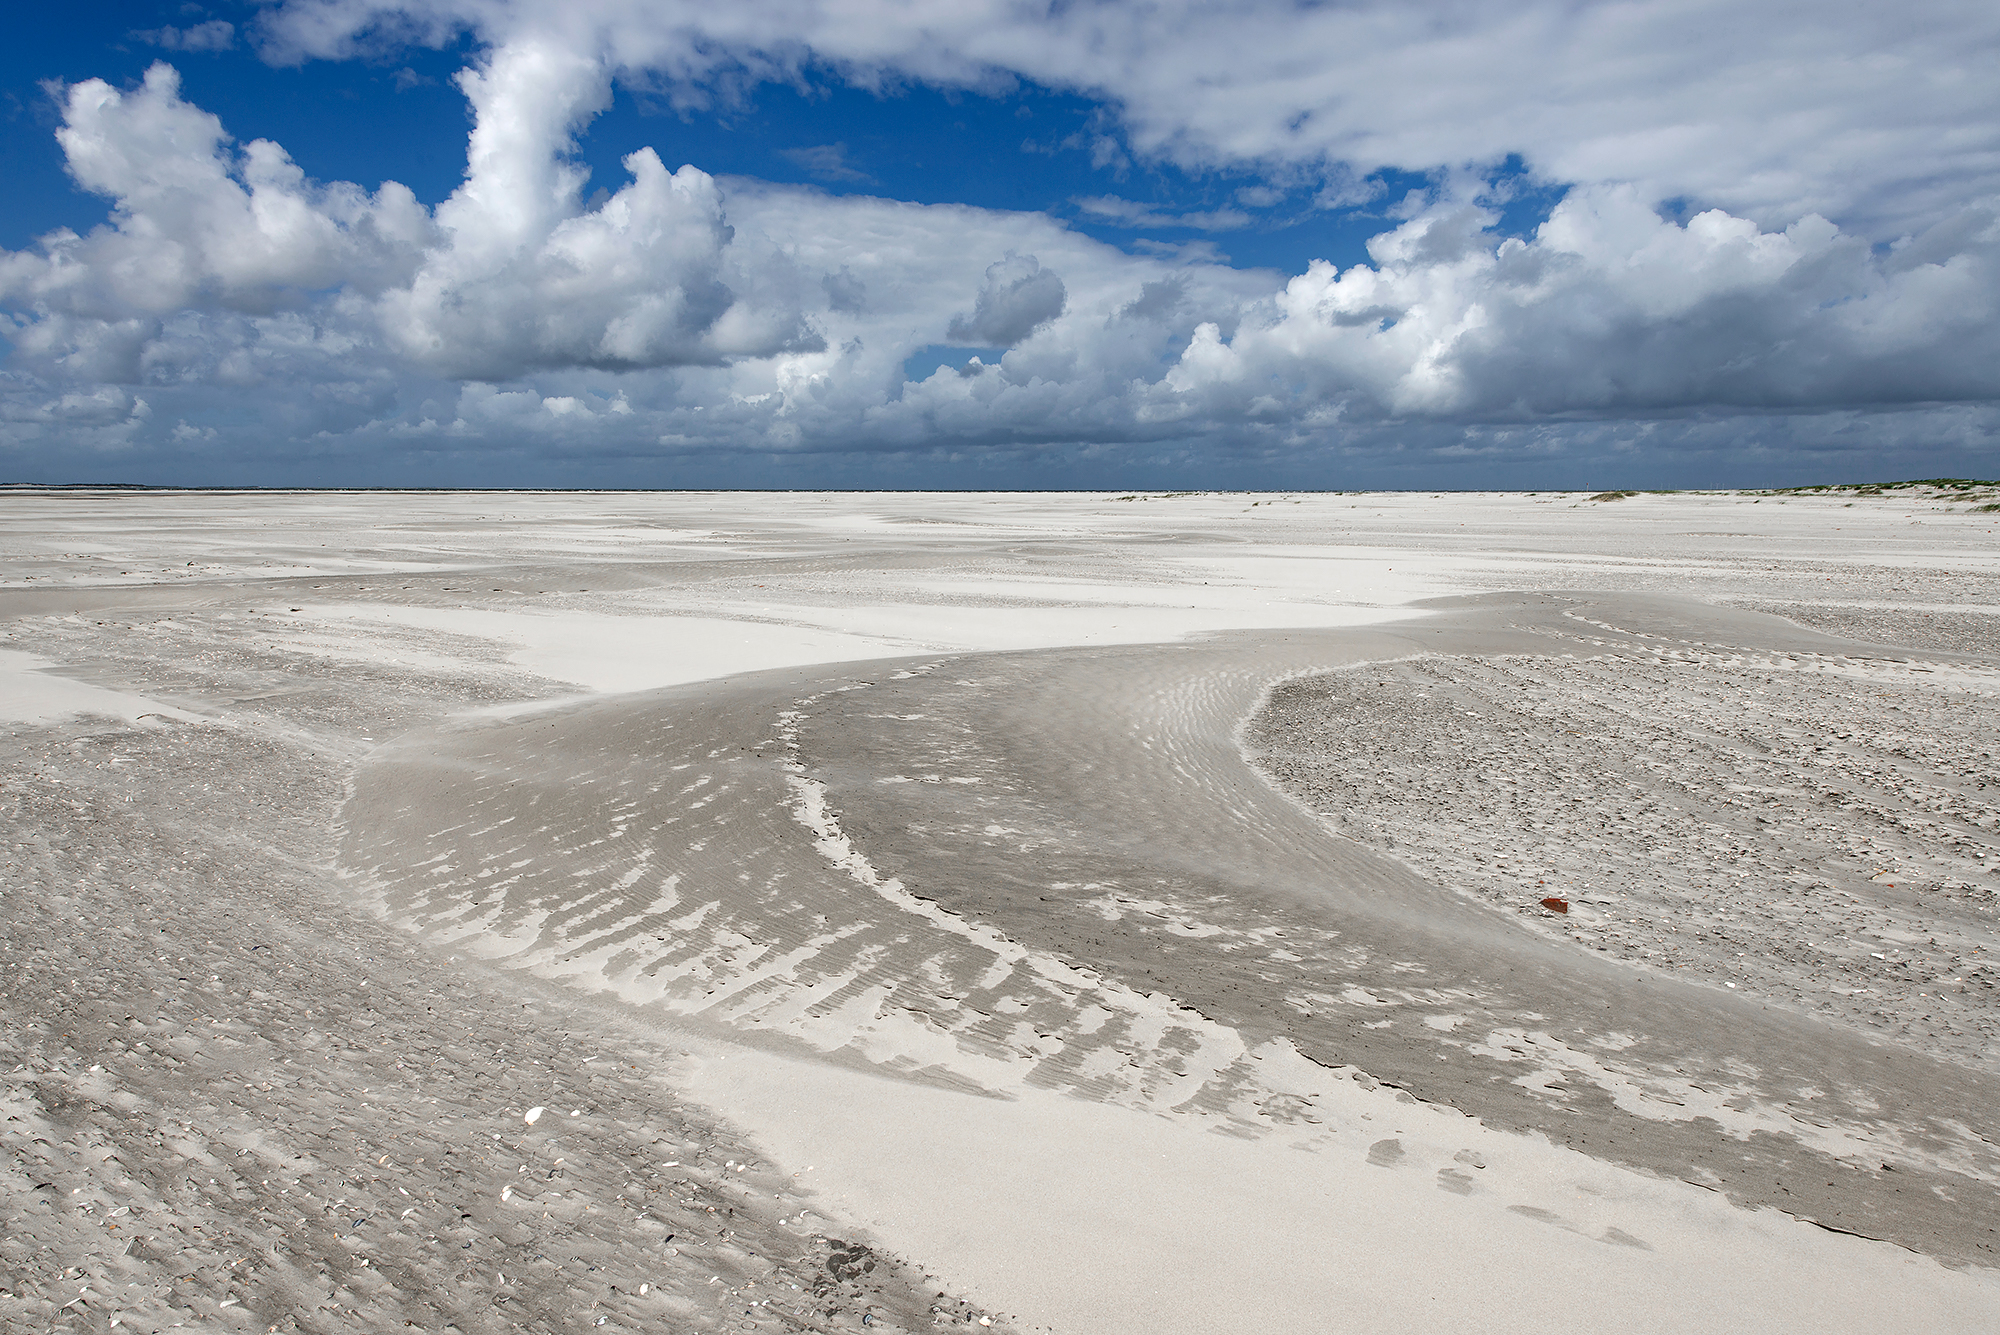 Uitgestrekte strandvlakte met witte zandbanen op het onbewoonde waddeneiland Rottumeroog in de Nederlandse Waddenzee.